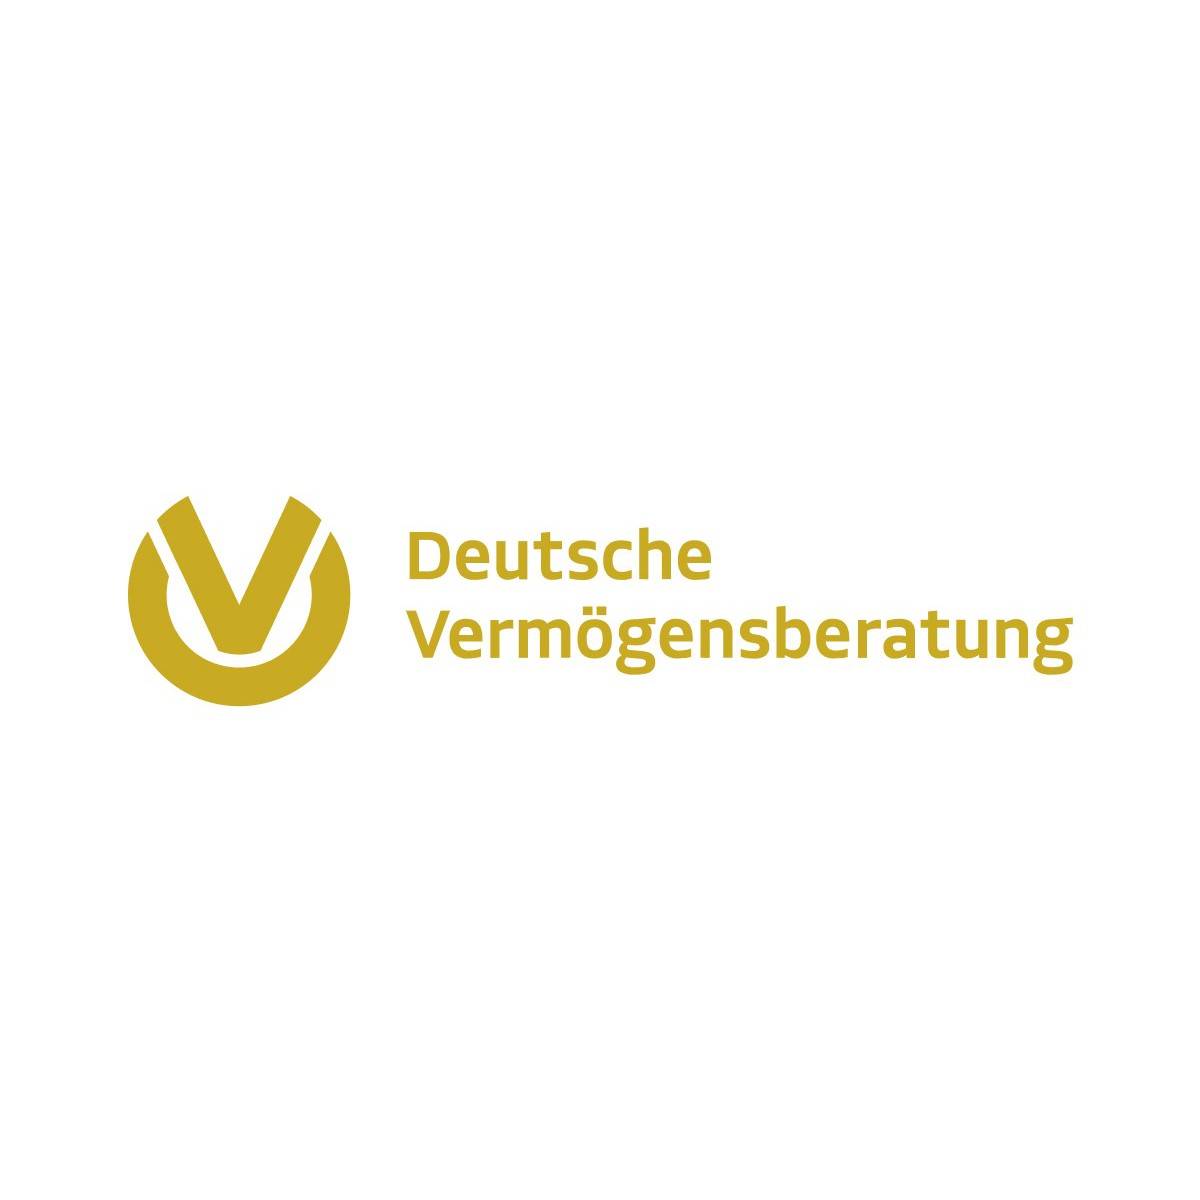 Sascha Schulz Agentur für Deutsche Vermögensberatung in Berlin - Logo